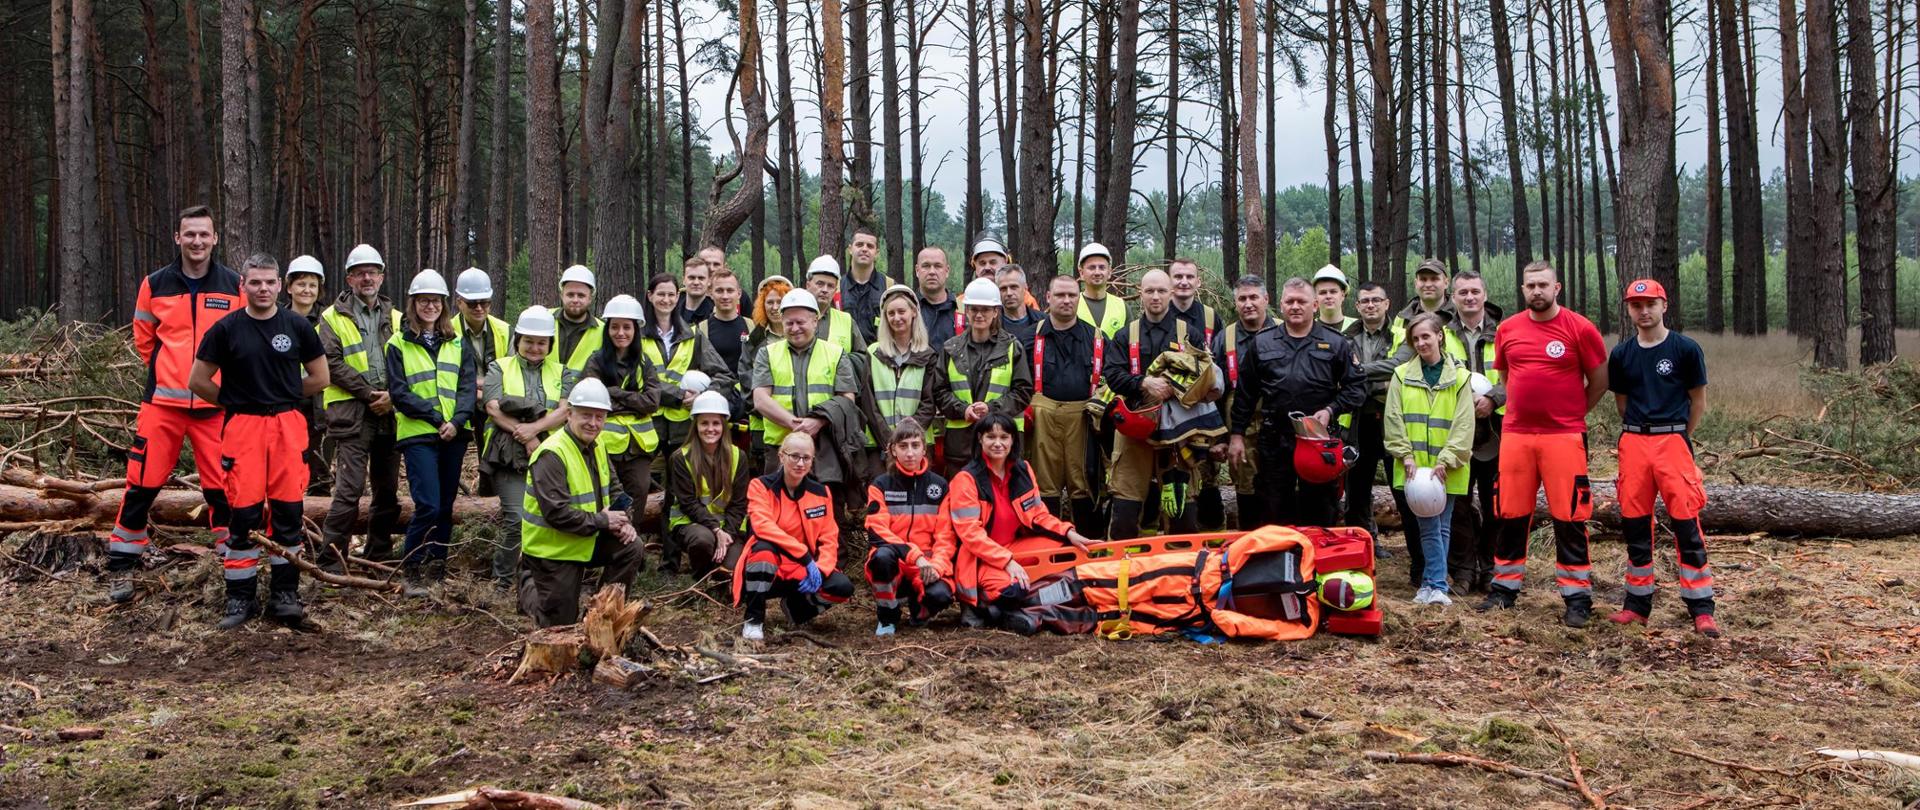 Jest to wspólne pamiątkowe zdjęcie wszystkich osób biorących udział w ćwiczeniach. Na zdjęciu widać strażaków, leśników oraz przedstawicieli Katedry Ratownictwa Medycznego Państwowej Uczelni Stanisława Staszica w Pile.